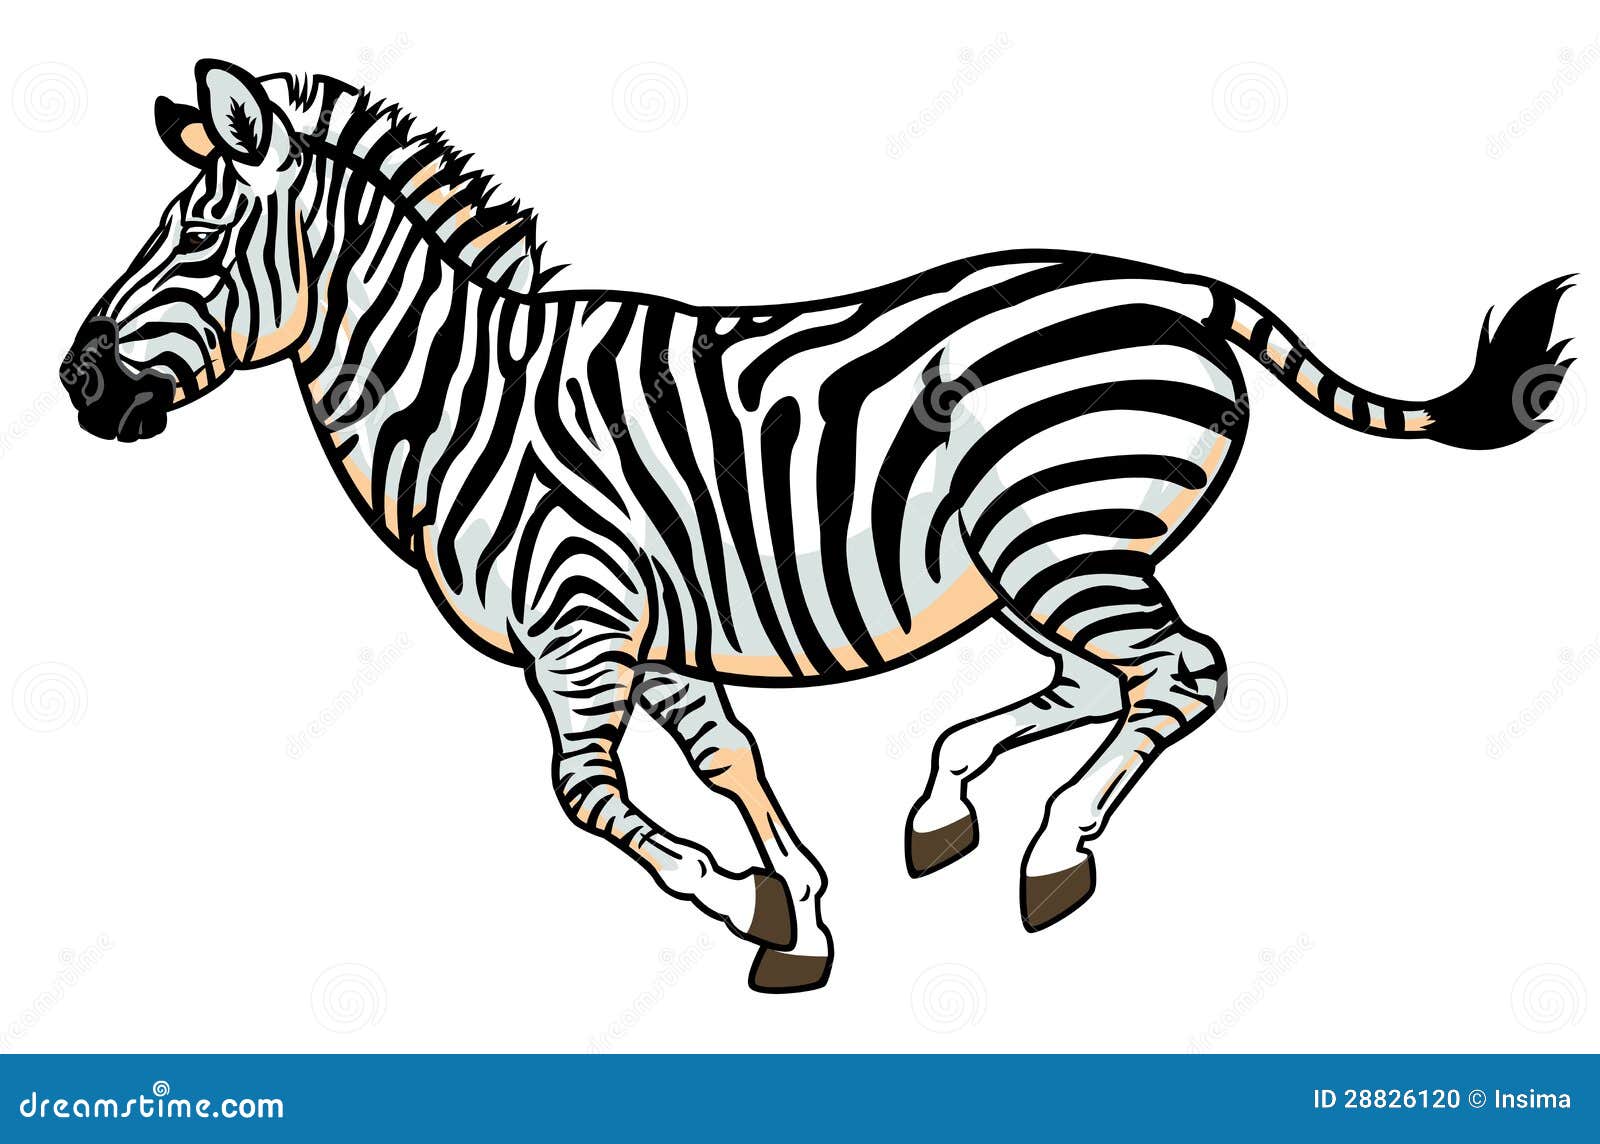 zebra running clipart - photo #9